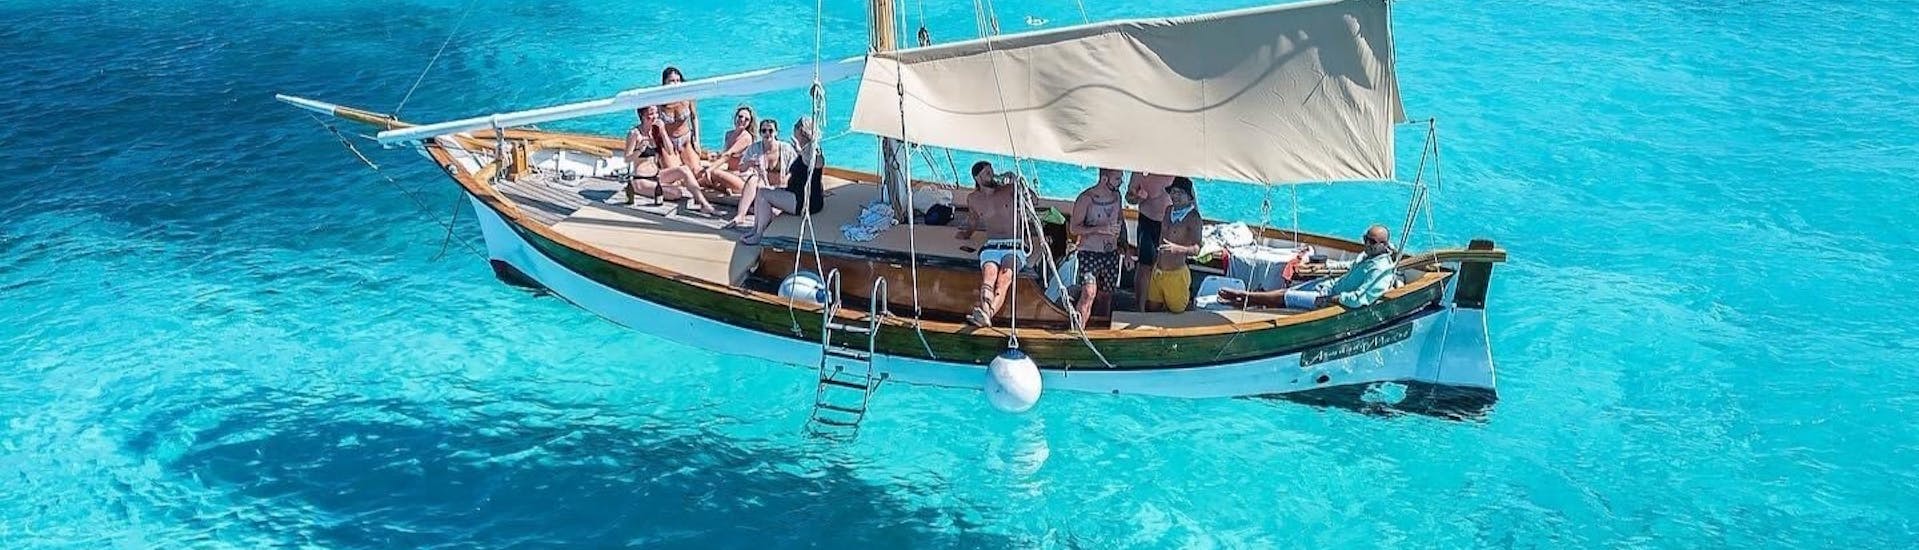 Gita in barca alle isole di Tavolara e Molara con snorkeling e aperitivo.